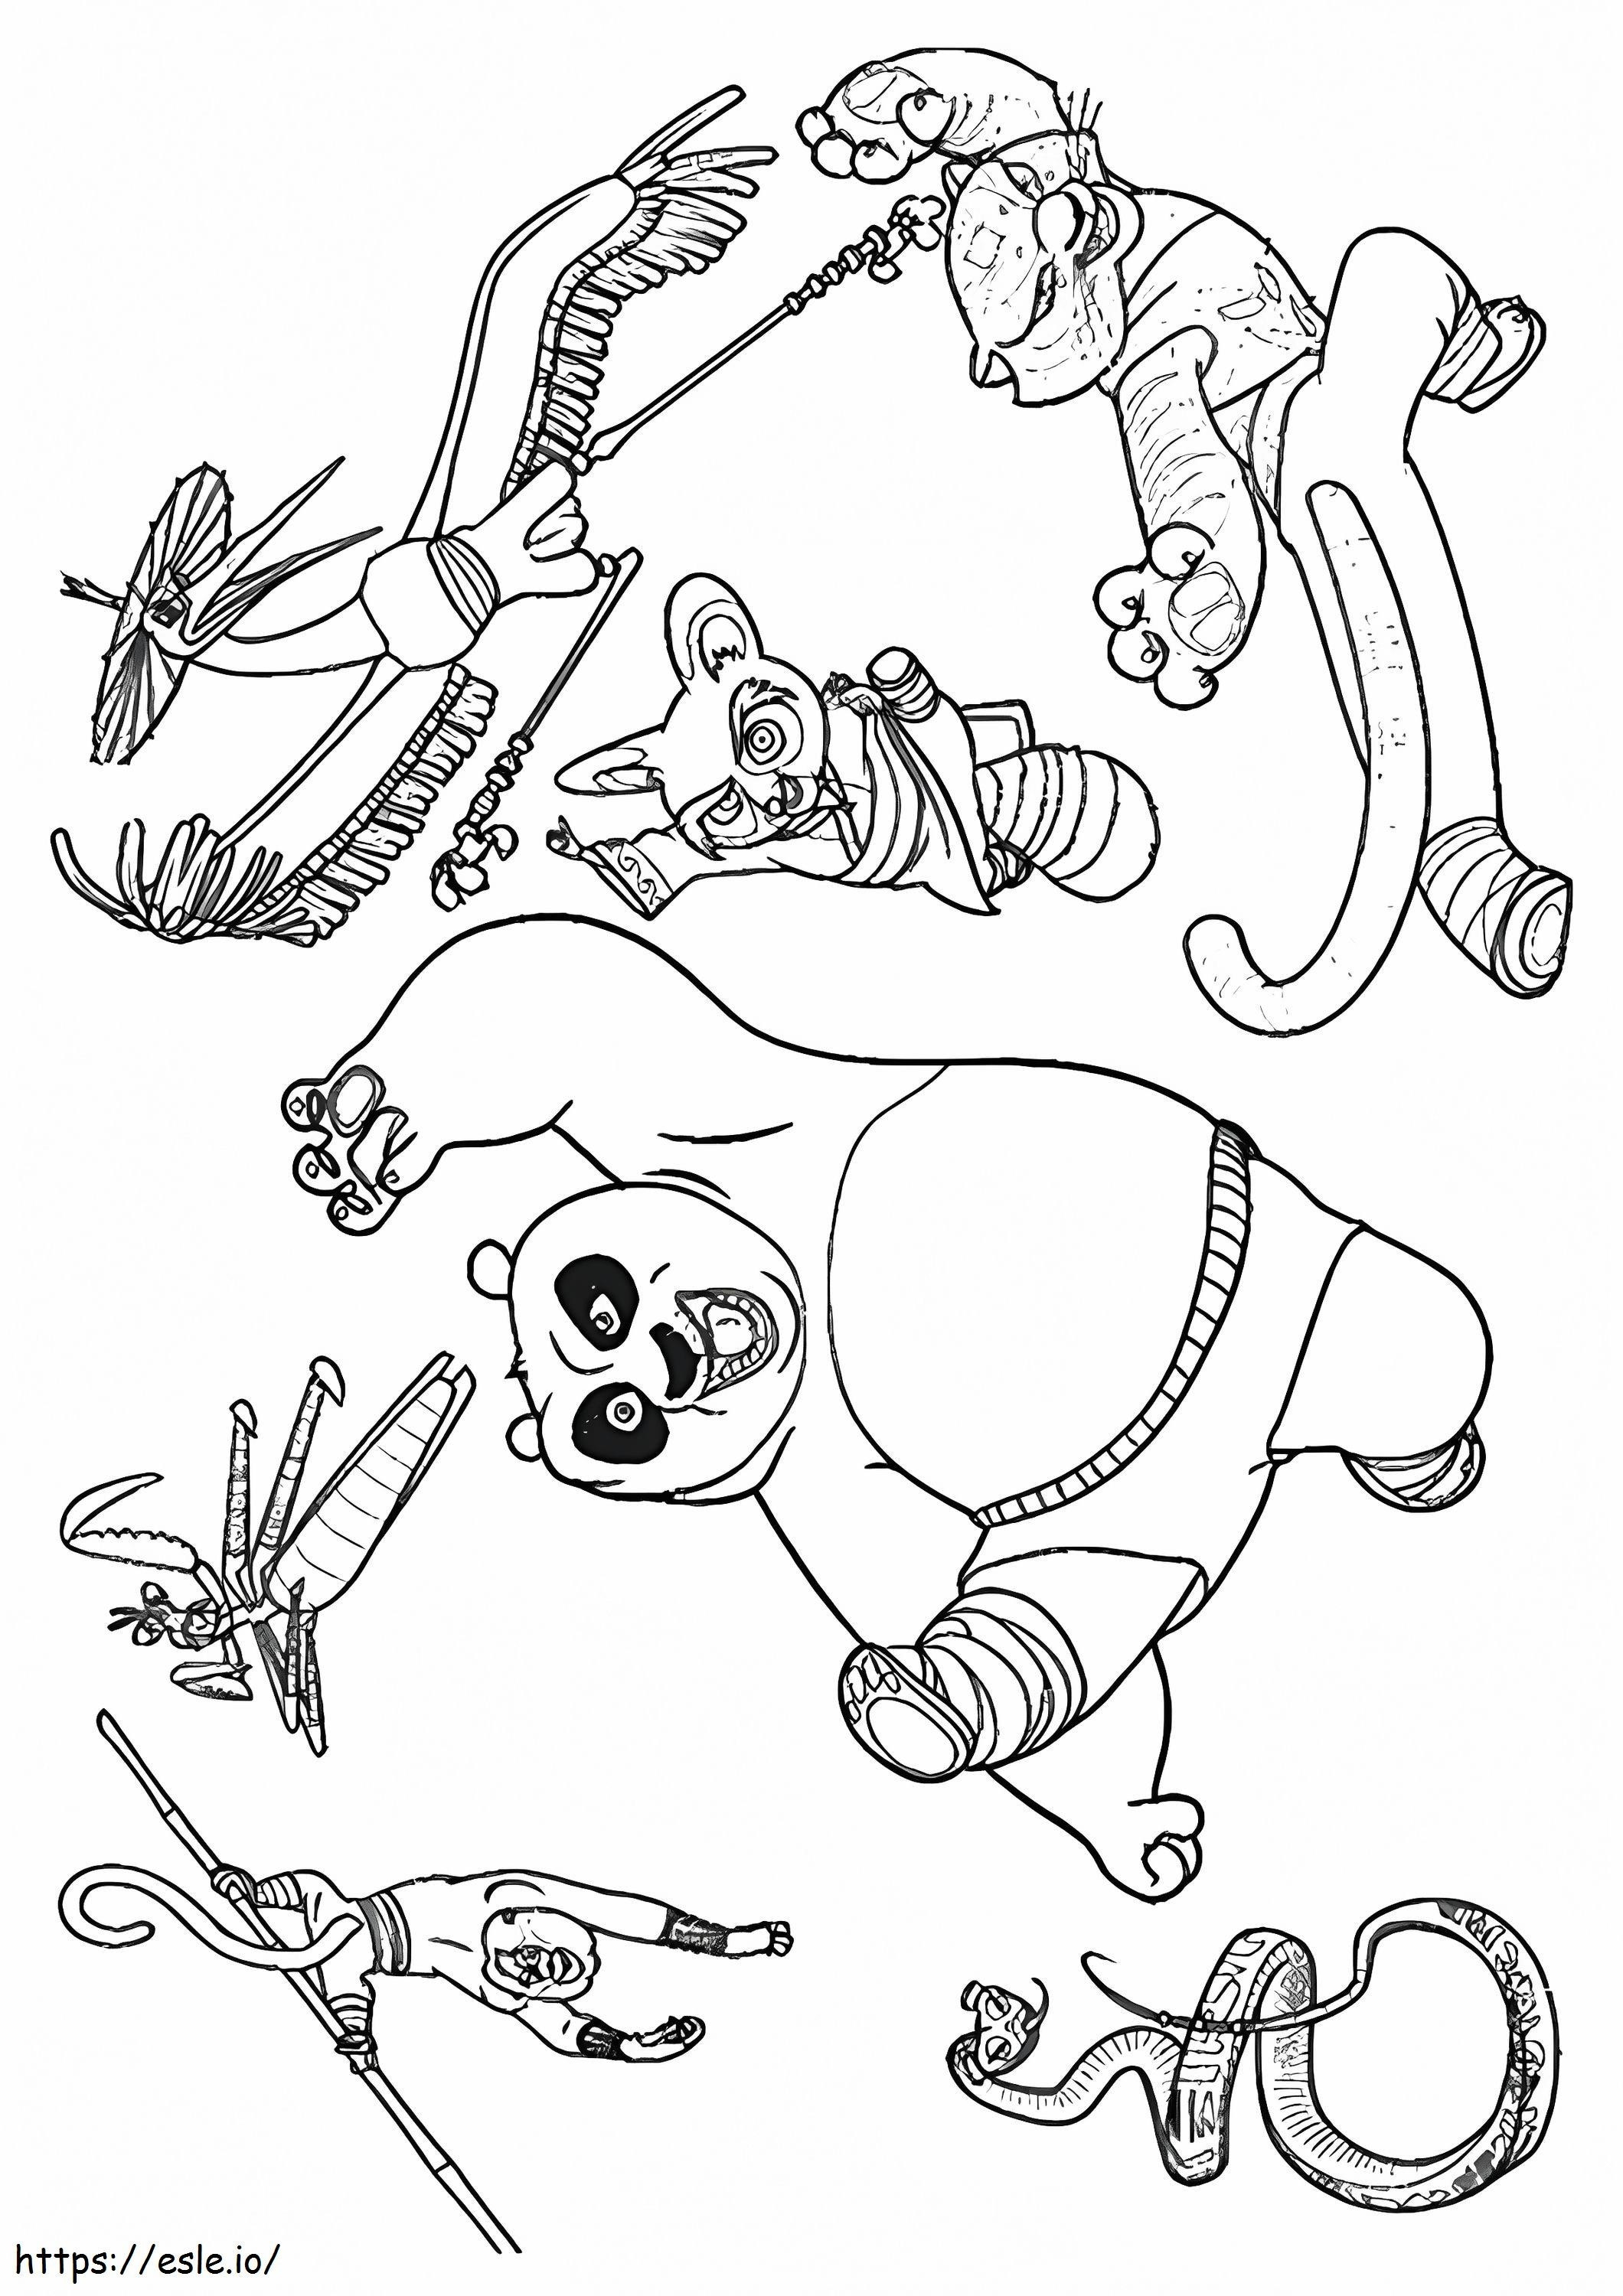 Coloriage  Le Kung Fu Panda et ses amis A4 à imprimer dessin